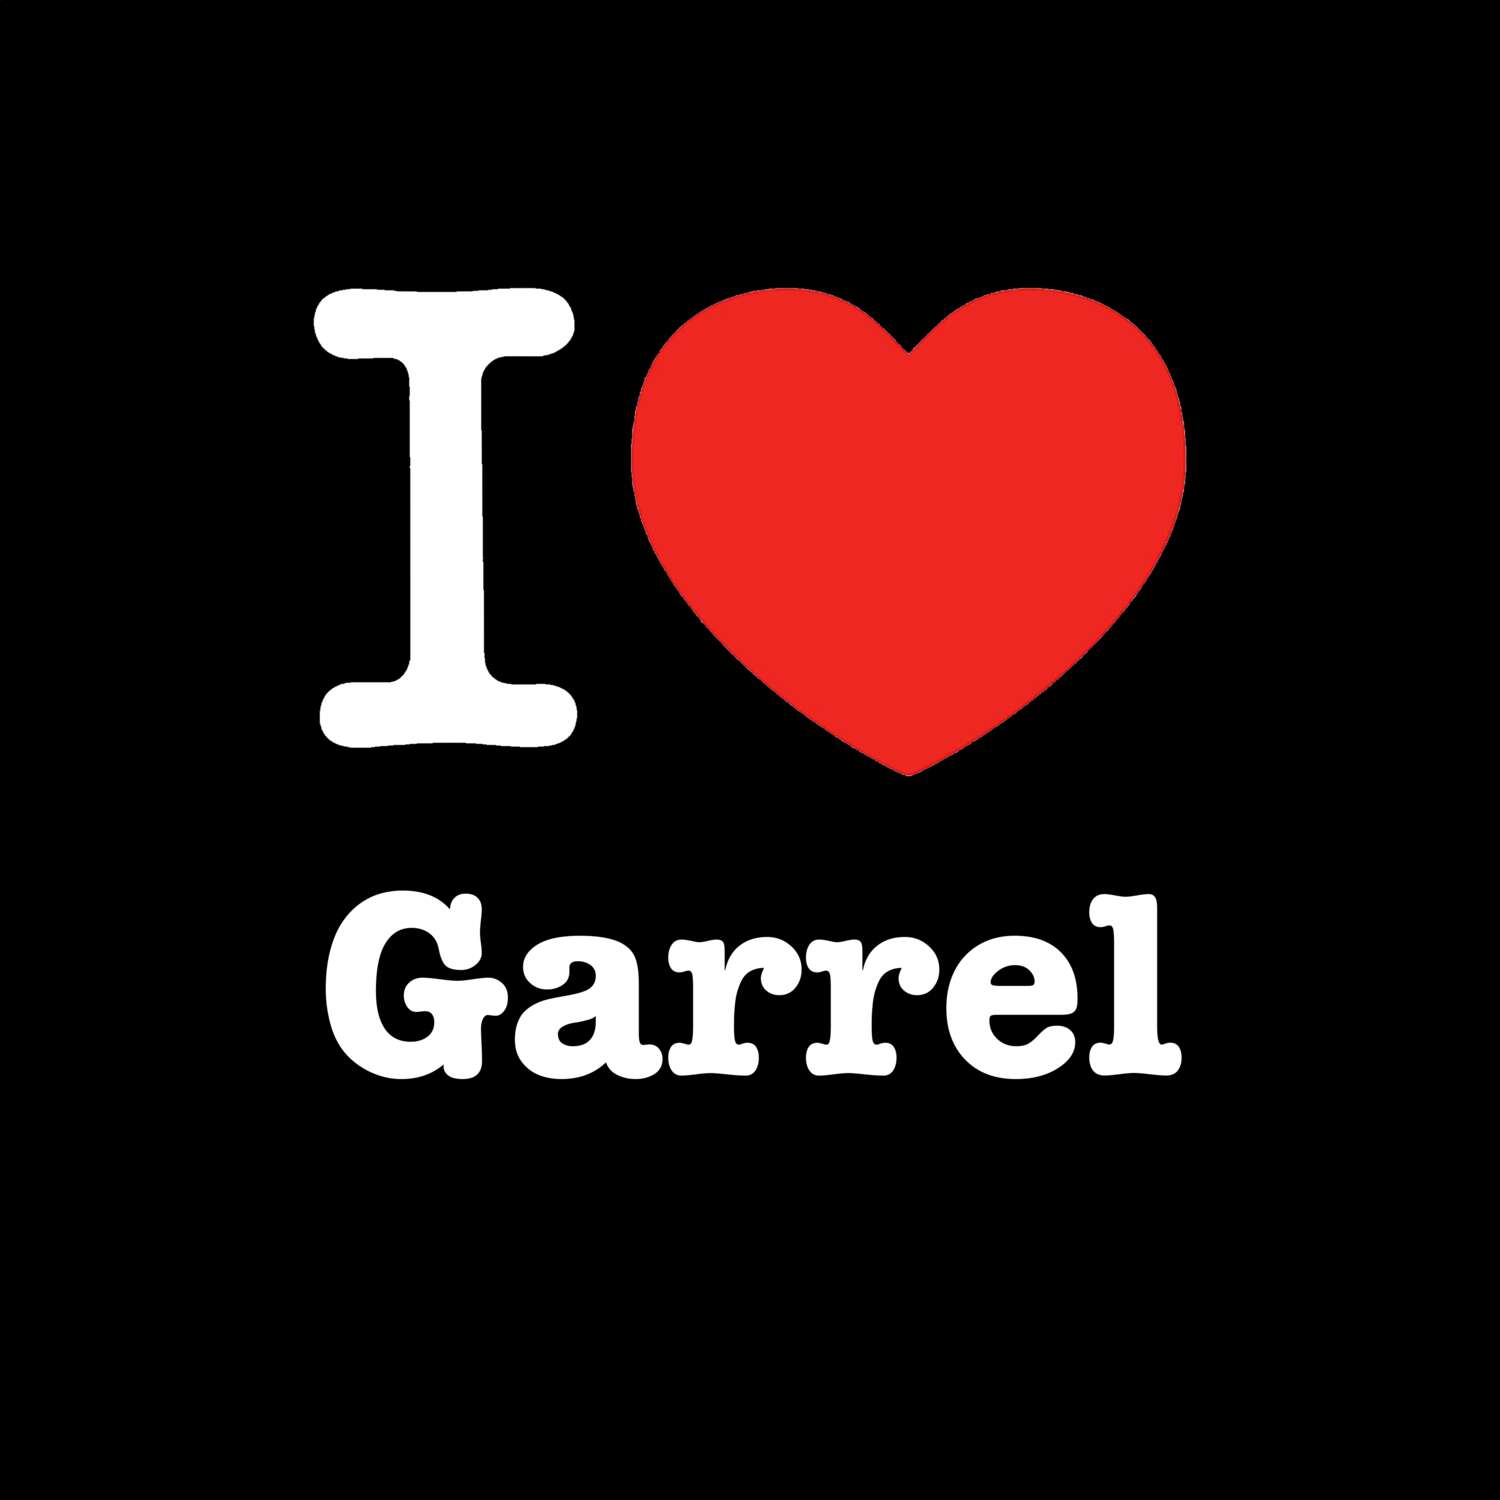 Garrel T-Shirt »I love«